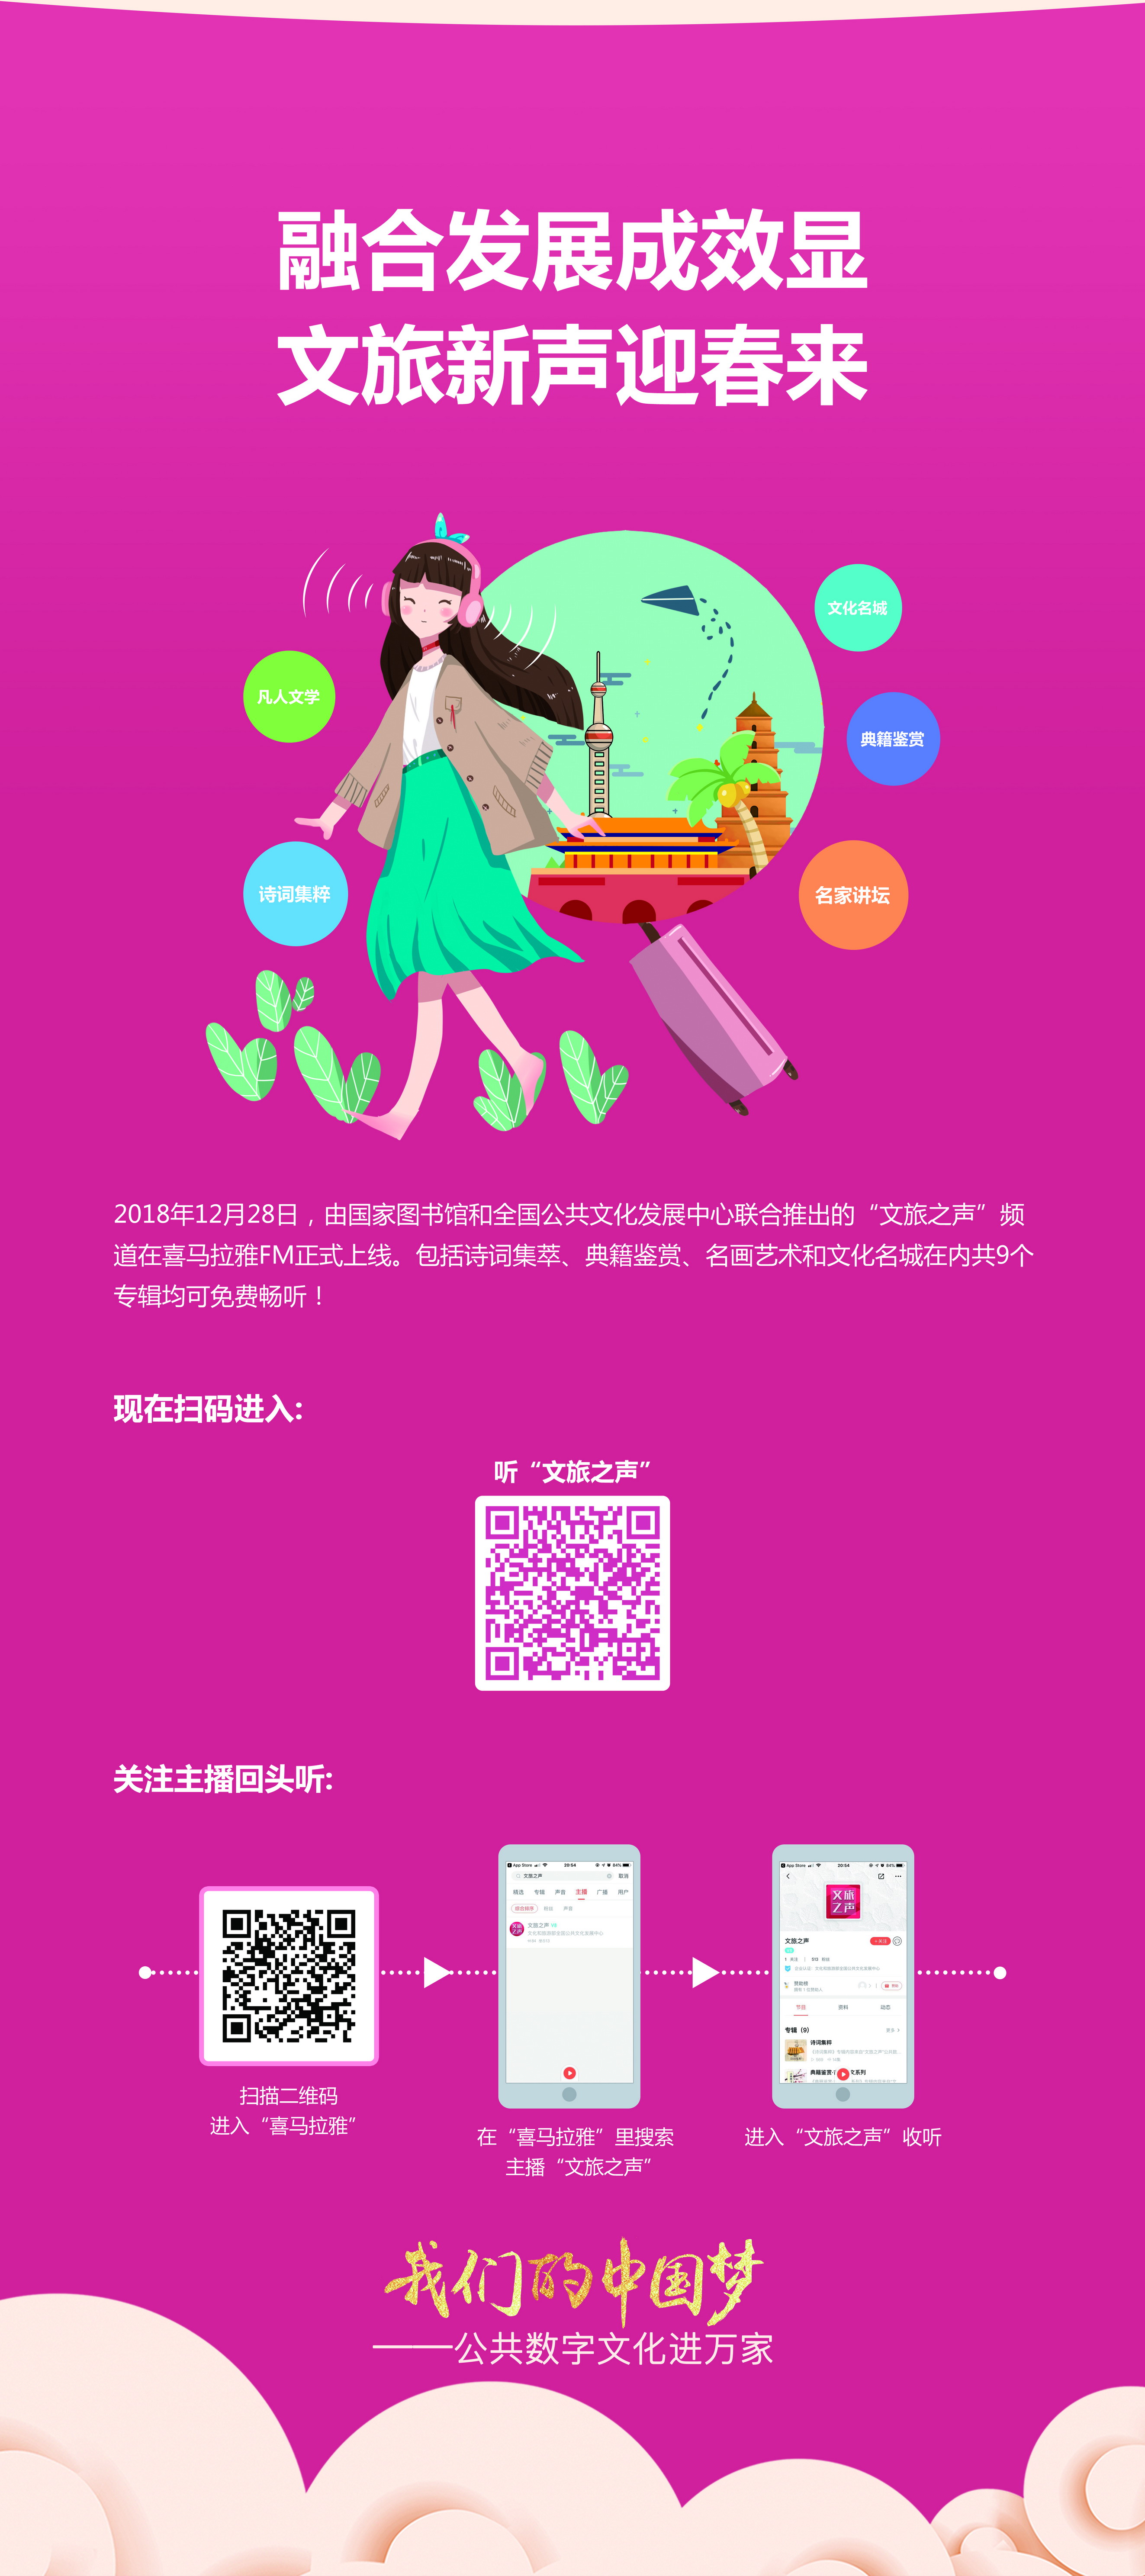 我们的中国梦——公共数字文化进万家活动线下主题展览_图9